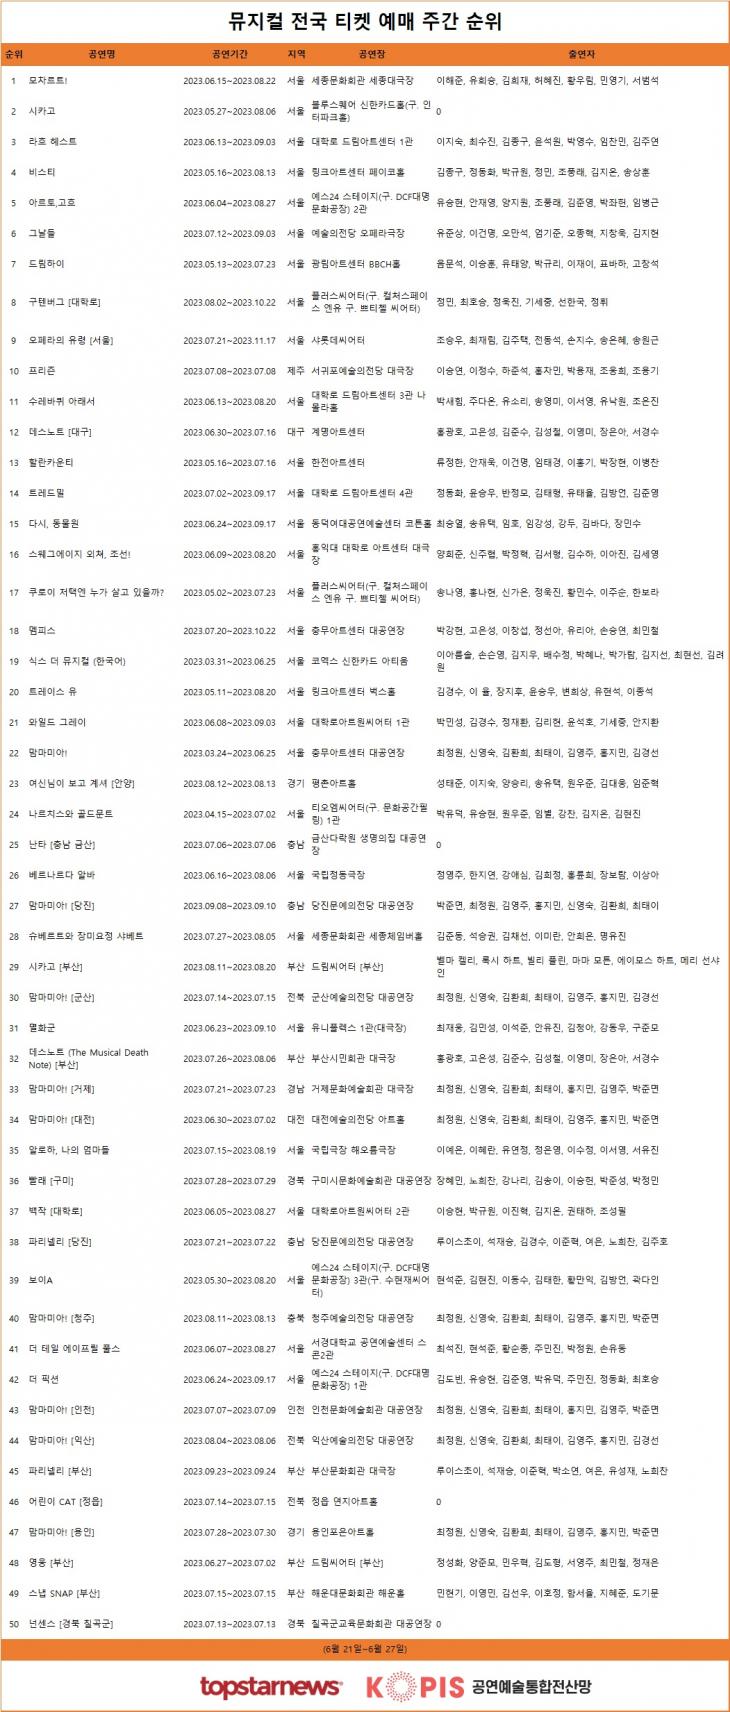 [표] 뮤지컬 티켓 예매율 주간 TOP50